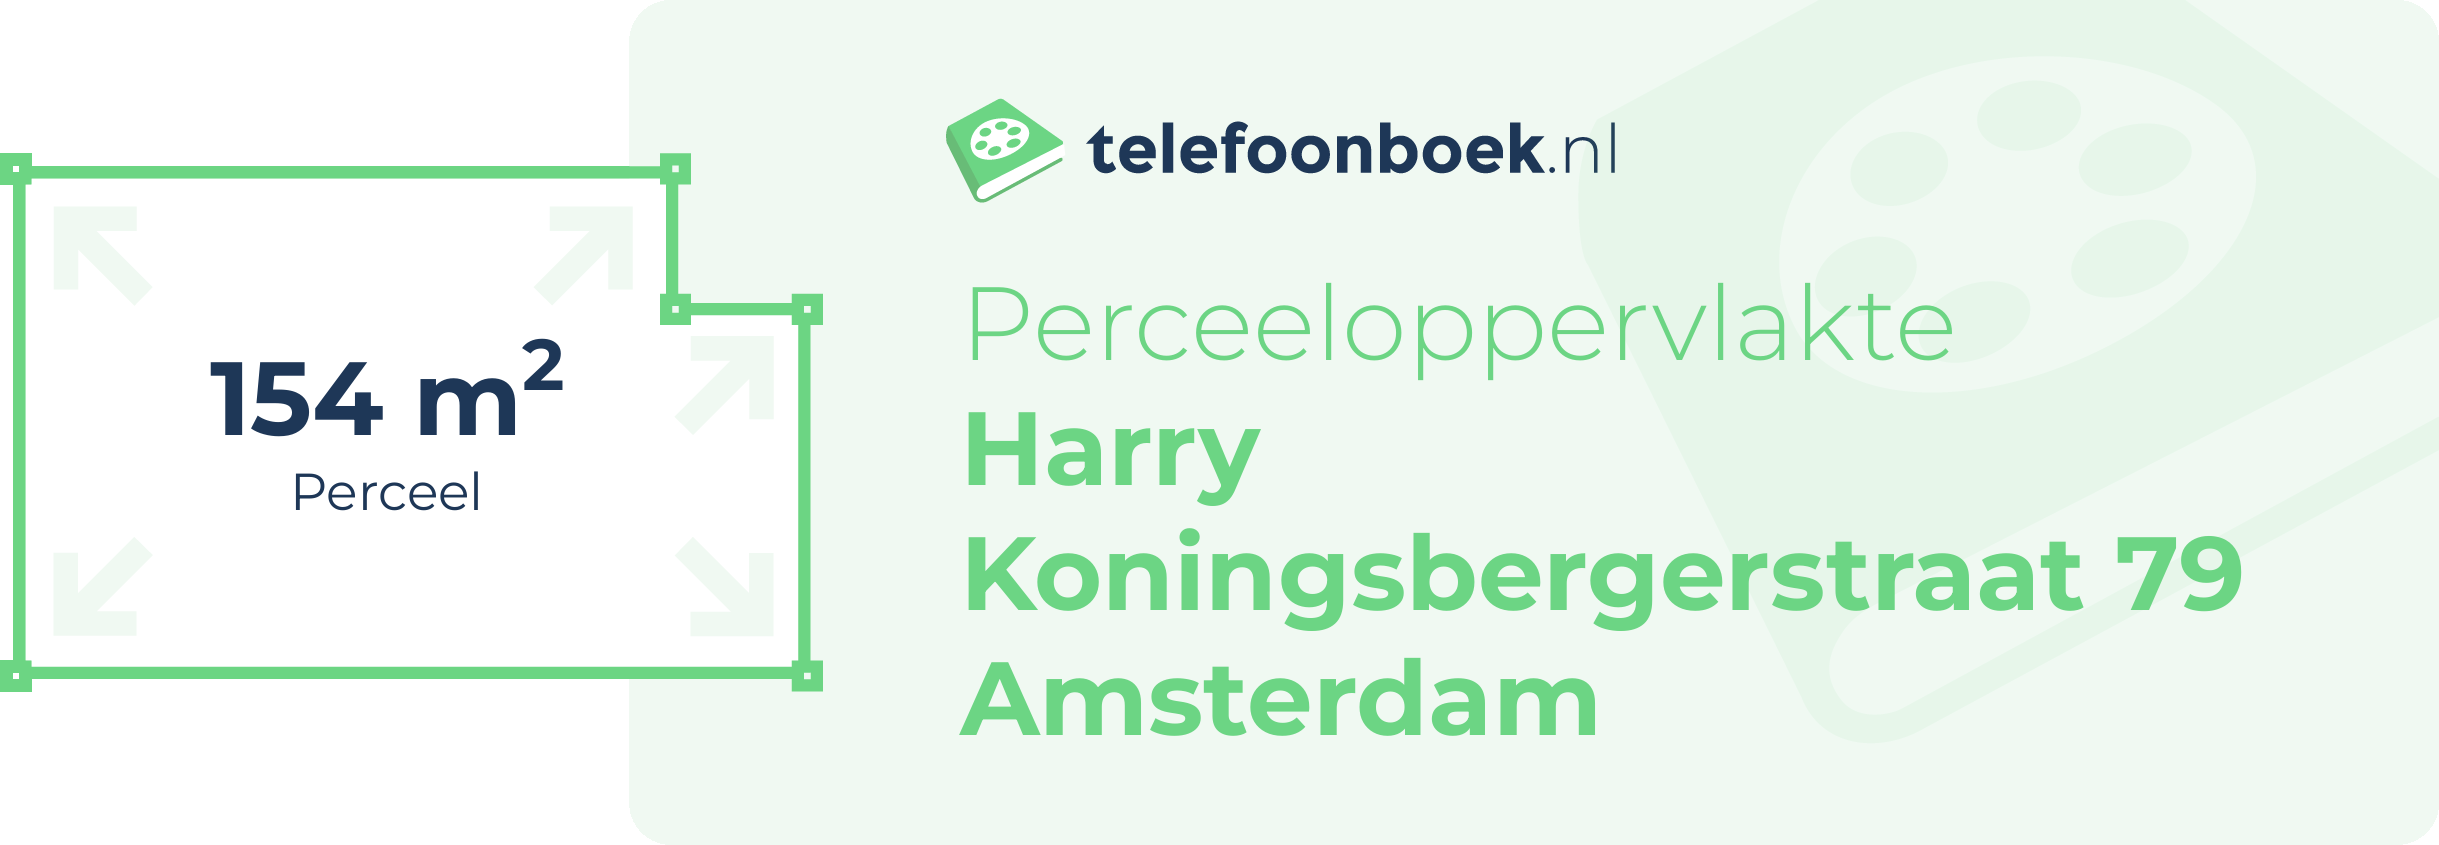 Perceeloppervlakte Harry Koningsbergerstraat 79 Amsterdam